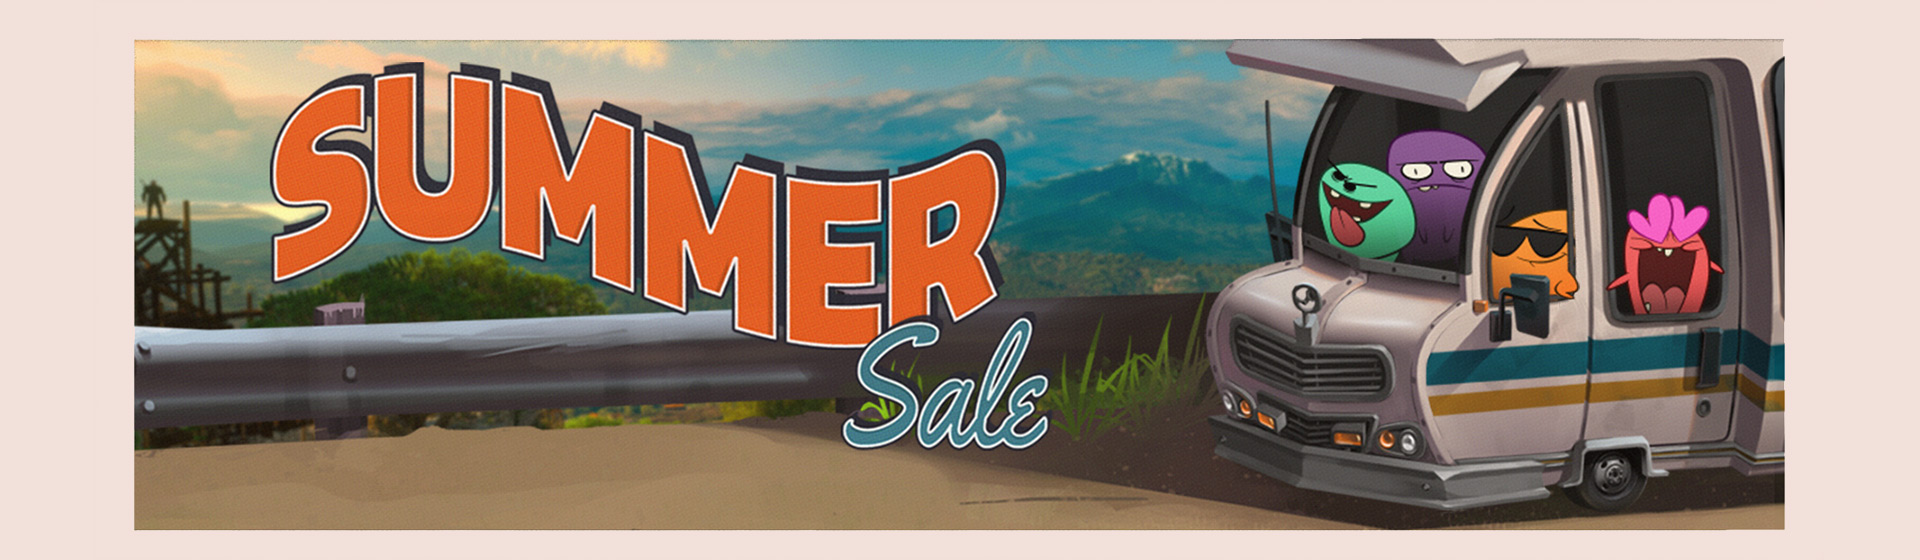 Steam Summer Sale 2020